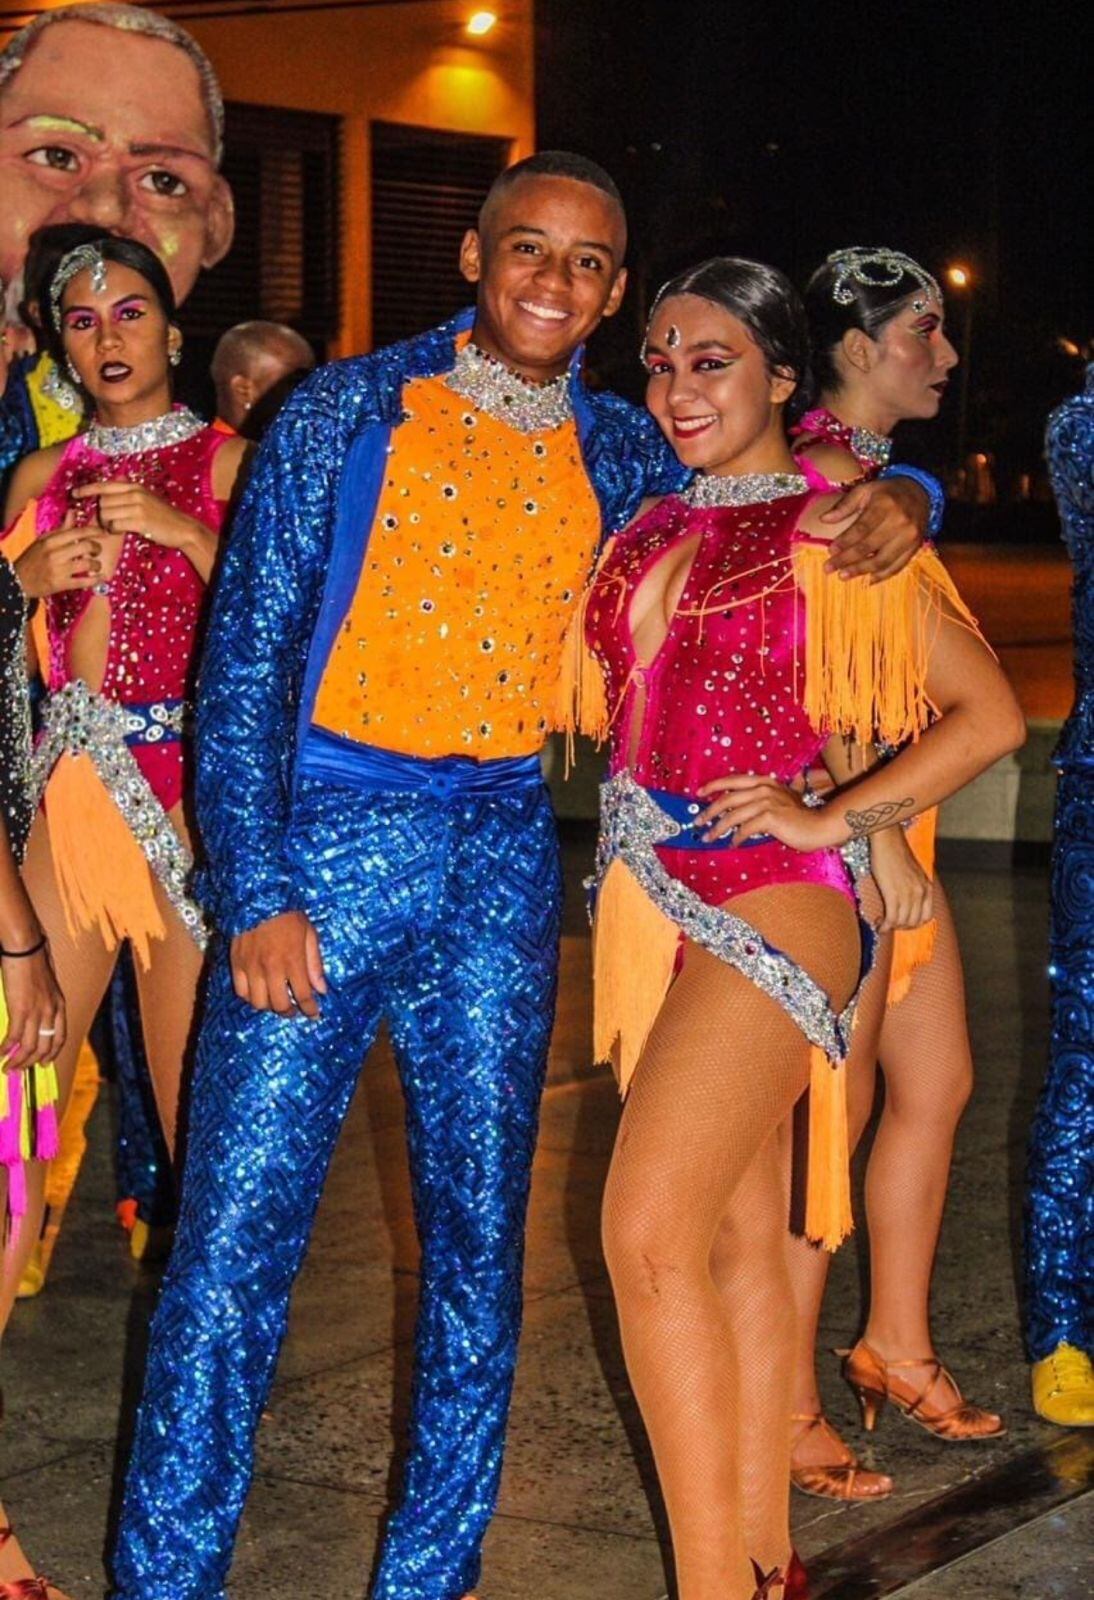 Harold Mesa, bailarín de salsa con su novia Isabella González D. también bailarina de salsa.